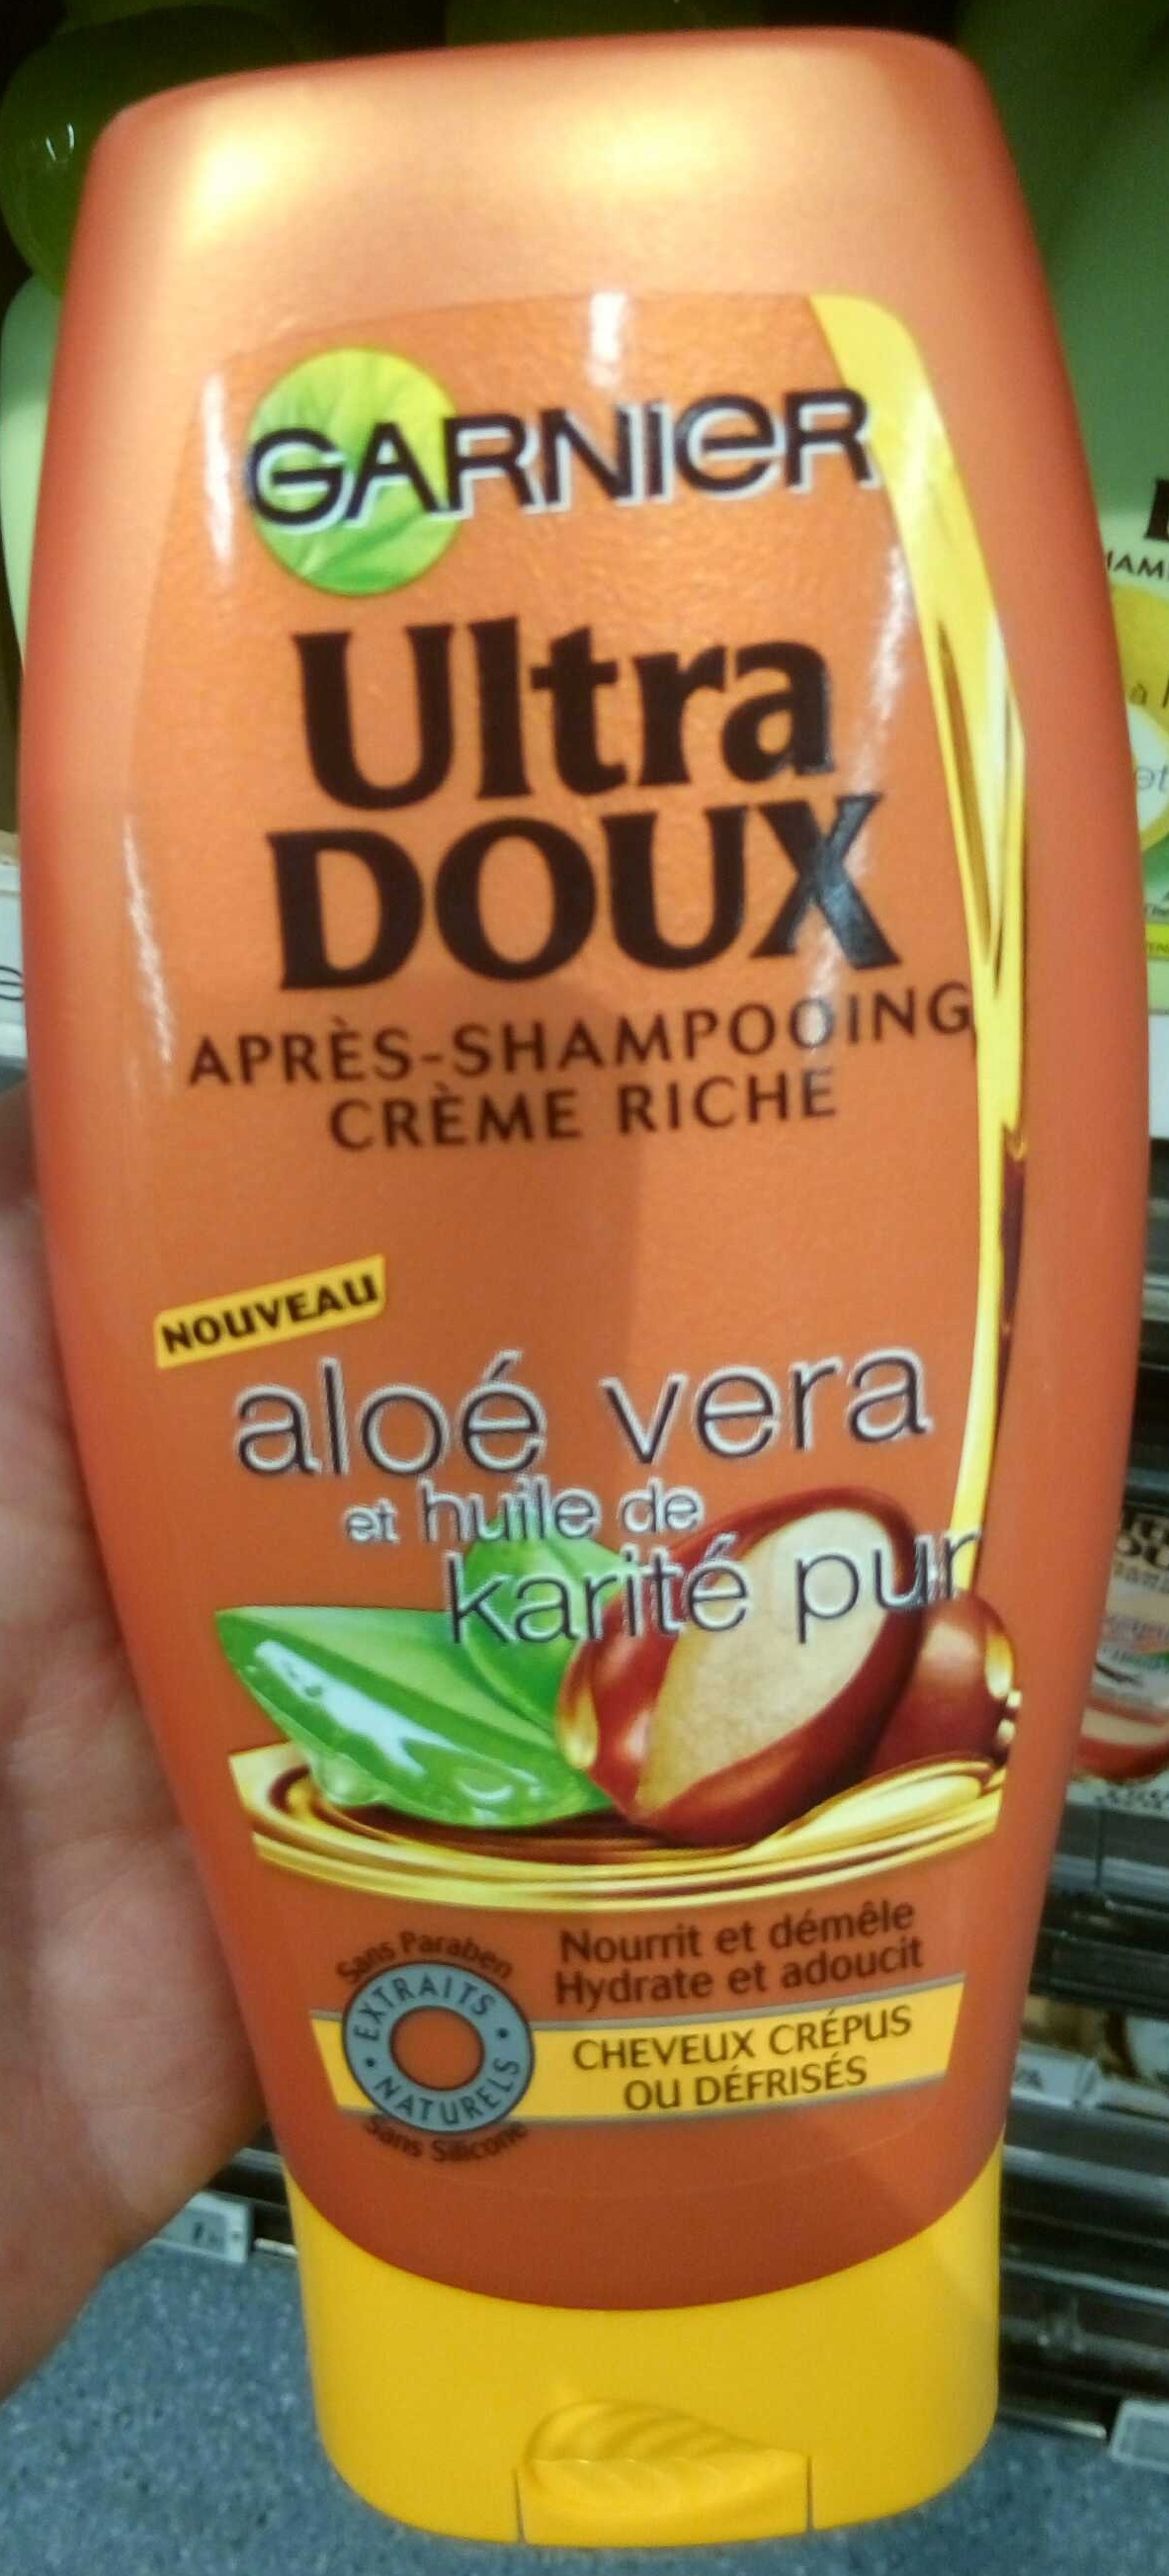 Ultra Doux Après-shampooing crème riche Aloé vera et huile de karité pur - Продукт - fr